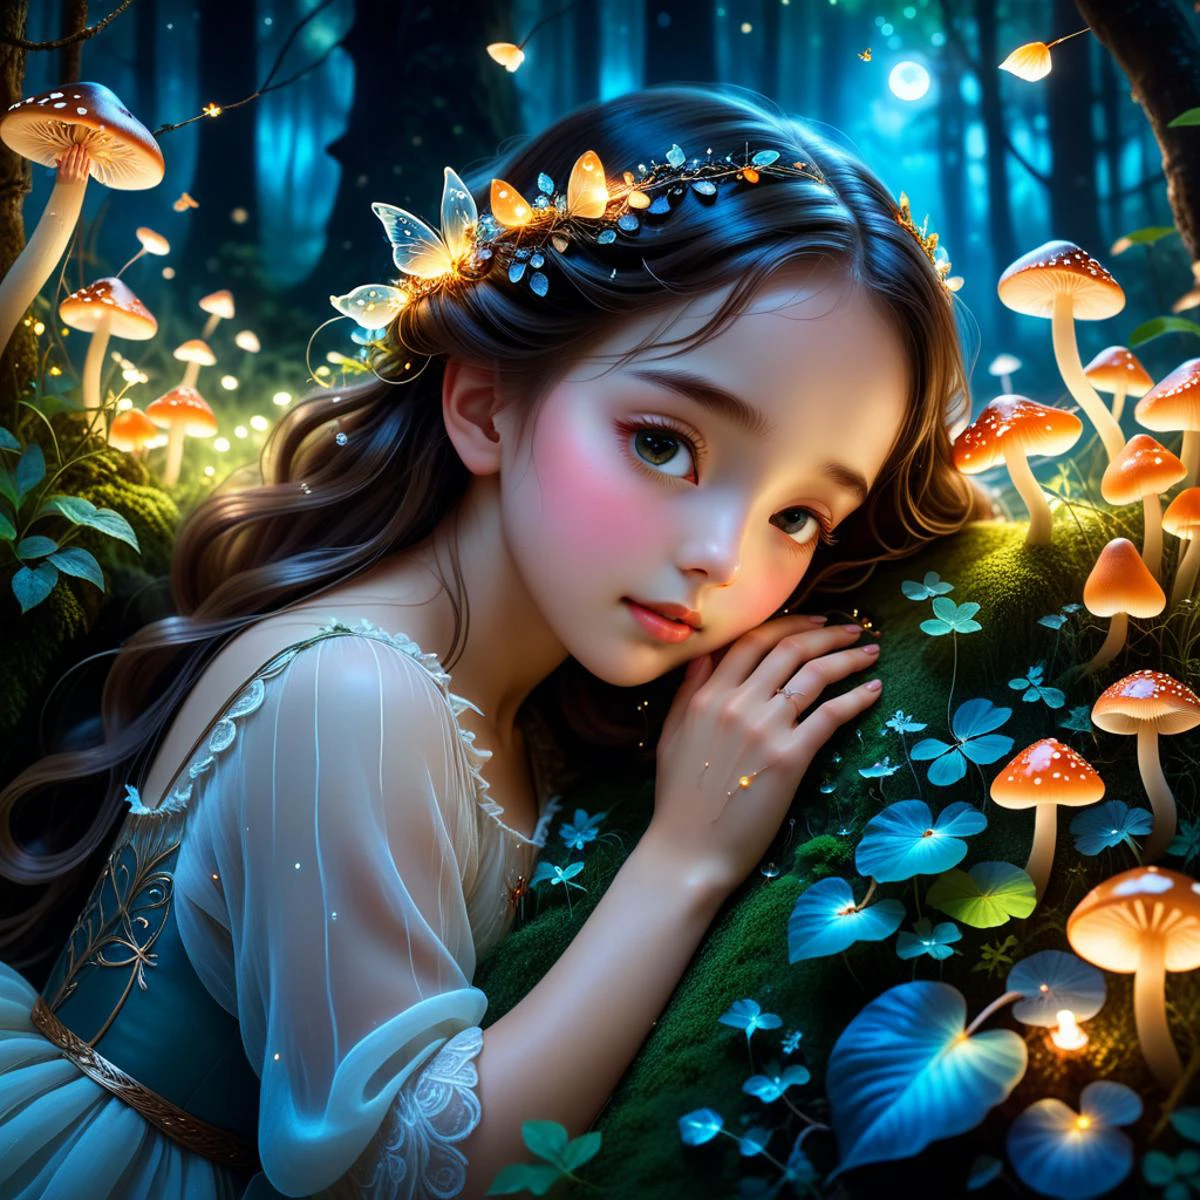 Ein kleines Mädchen schläft in den Armen der Waldgöttin,Zauberwald,traumhafte Farben,Nachtzeit,leuchtende Pilze,funkelnde Glühwürmchen,sanftes Mondlicht,feine Details,Fantasy-Kunst,detaillierte Texturen,üppigem Grün,magische Atmosphäre,heiter und friedlich,schön und ätherisch,Mädchen besetzt 1/5 des Bildes,Mädchen in der unteren Bildmitte,Hohe Bäume,dichtes Laub,bedeckter Himmel,Schattenhafter Wald,dramatische Perspektive,großen Stil,Gefühl der Ehrfurcht,Wald als Schwerpunkt,Anime-Stil,große Augen,Niedliche Gesichtszüge,weiches Haar,fließendes Kleid,süßer und unschuldiger Ausdruck,leuchtende Farben,Wunderlich und charmant,kindliches Staunen,Schön und bezaubernd,**detaillierte Hände,Anmutige Finger,elegante Fingerspitzen,natürliche Handhaltungen,realistische Handanatomie,weiche Haut,zarte Adern,Perfekte Nägel,fünf Finger,fünf Ziffern,Richtige Handstruktur,KEINE ZUSÄTZLICHEN FINGER,gut definierte Finger**,